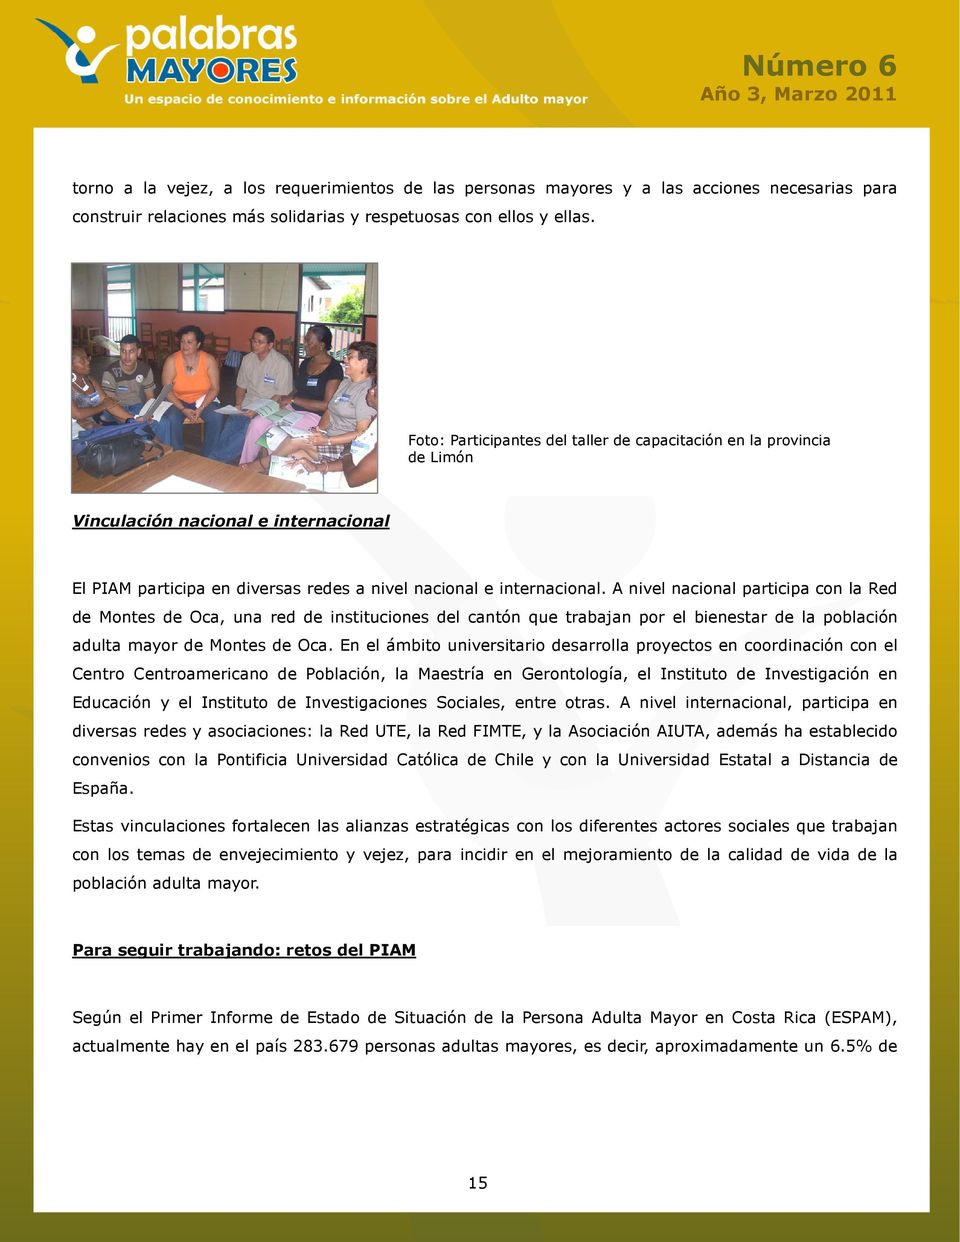 A nivel nacional participa con la Red de Montes de Oca, una red de instituciones del cantón que trabajan por el bienestar de la población adulta mayor de Montes de Oca.